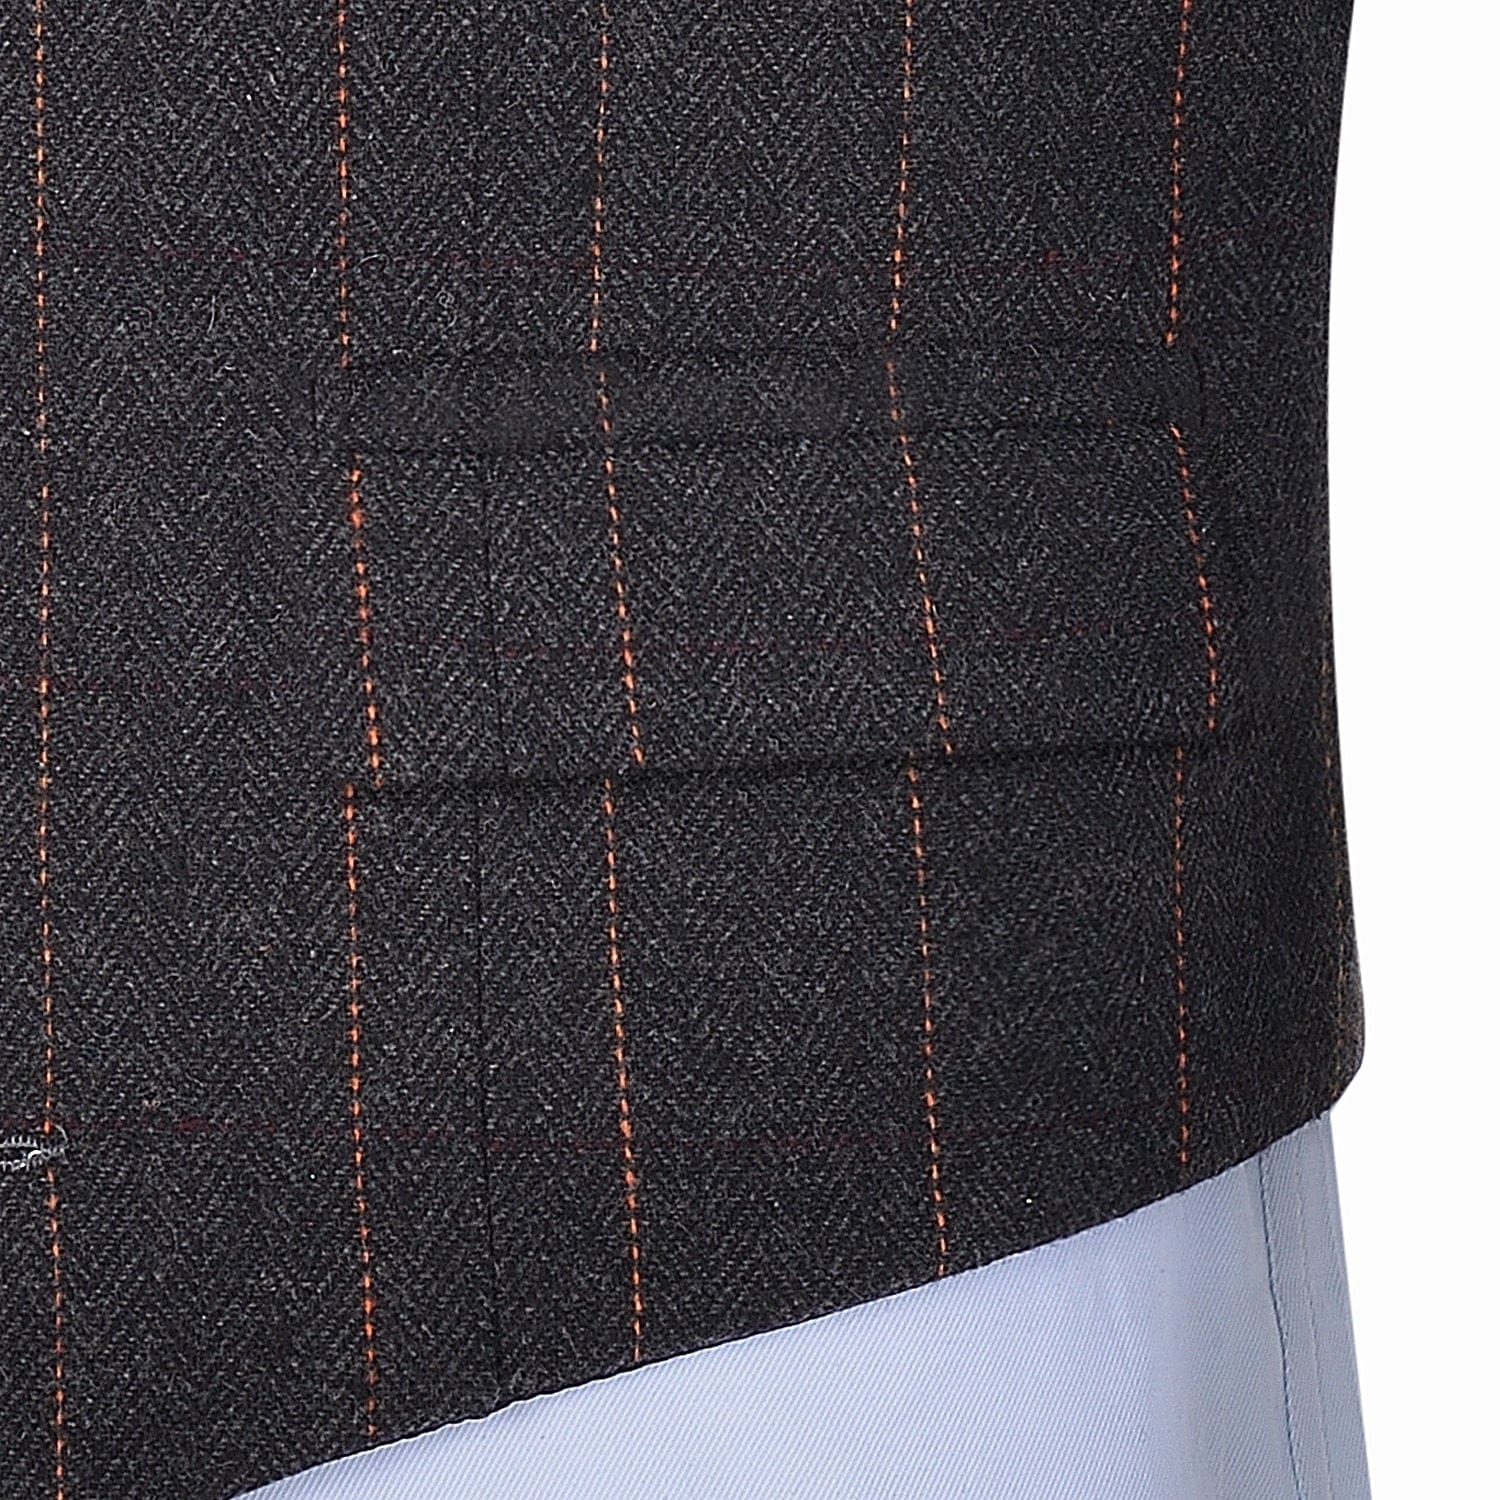 aesido Black Casual Men's Suit Vest Plaid Notch Lapel Waistcoat